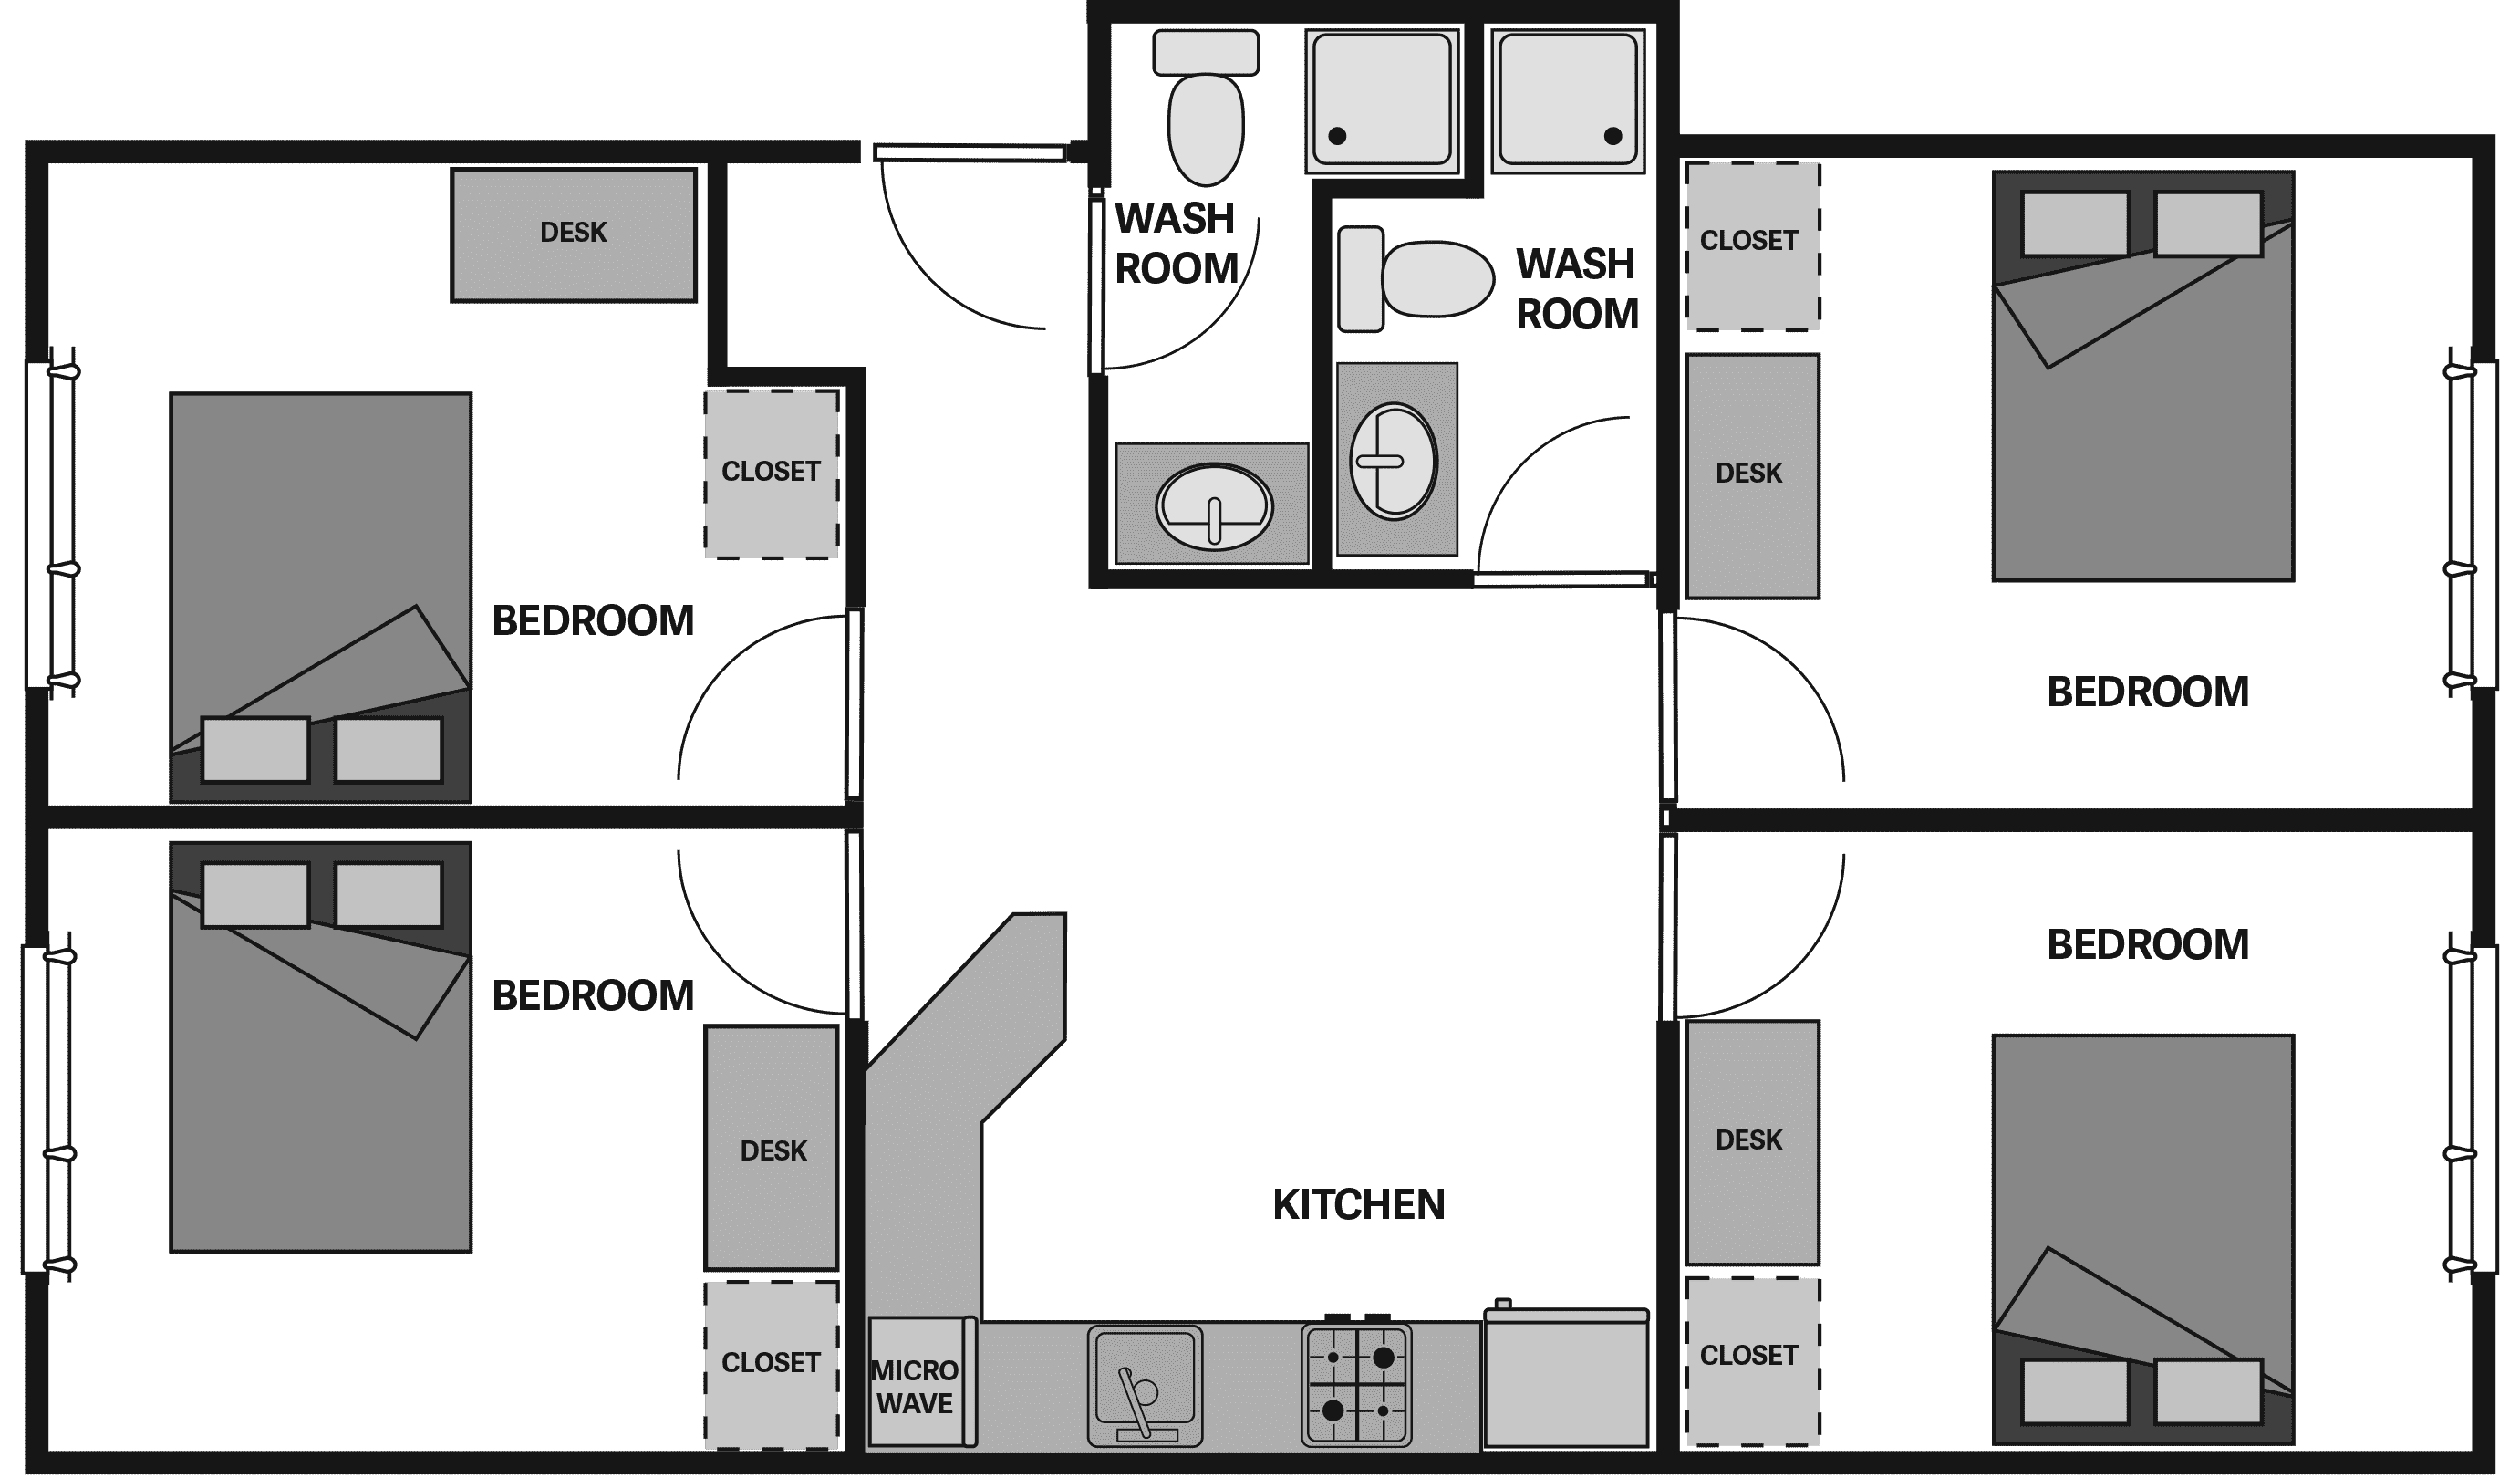 Four-bedroom floor plan